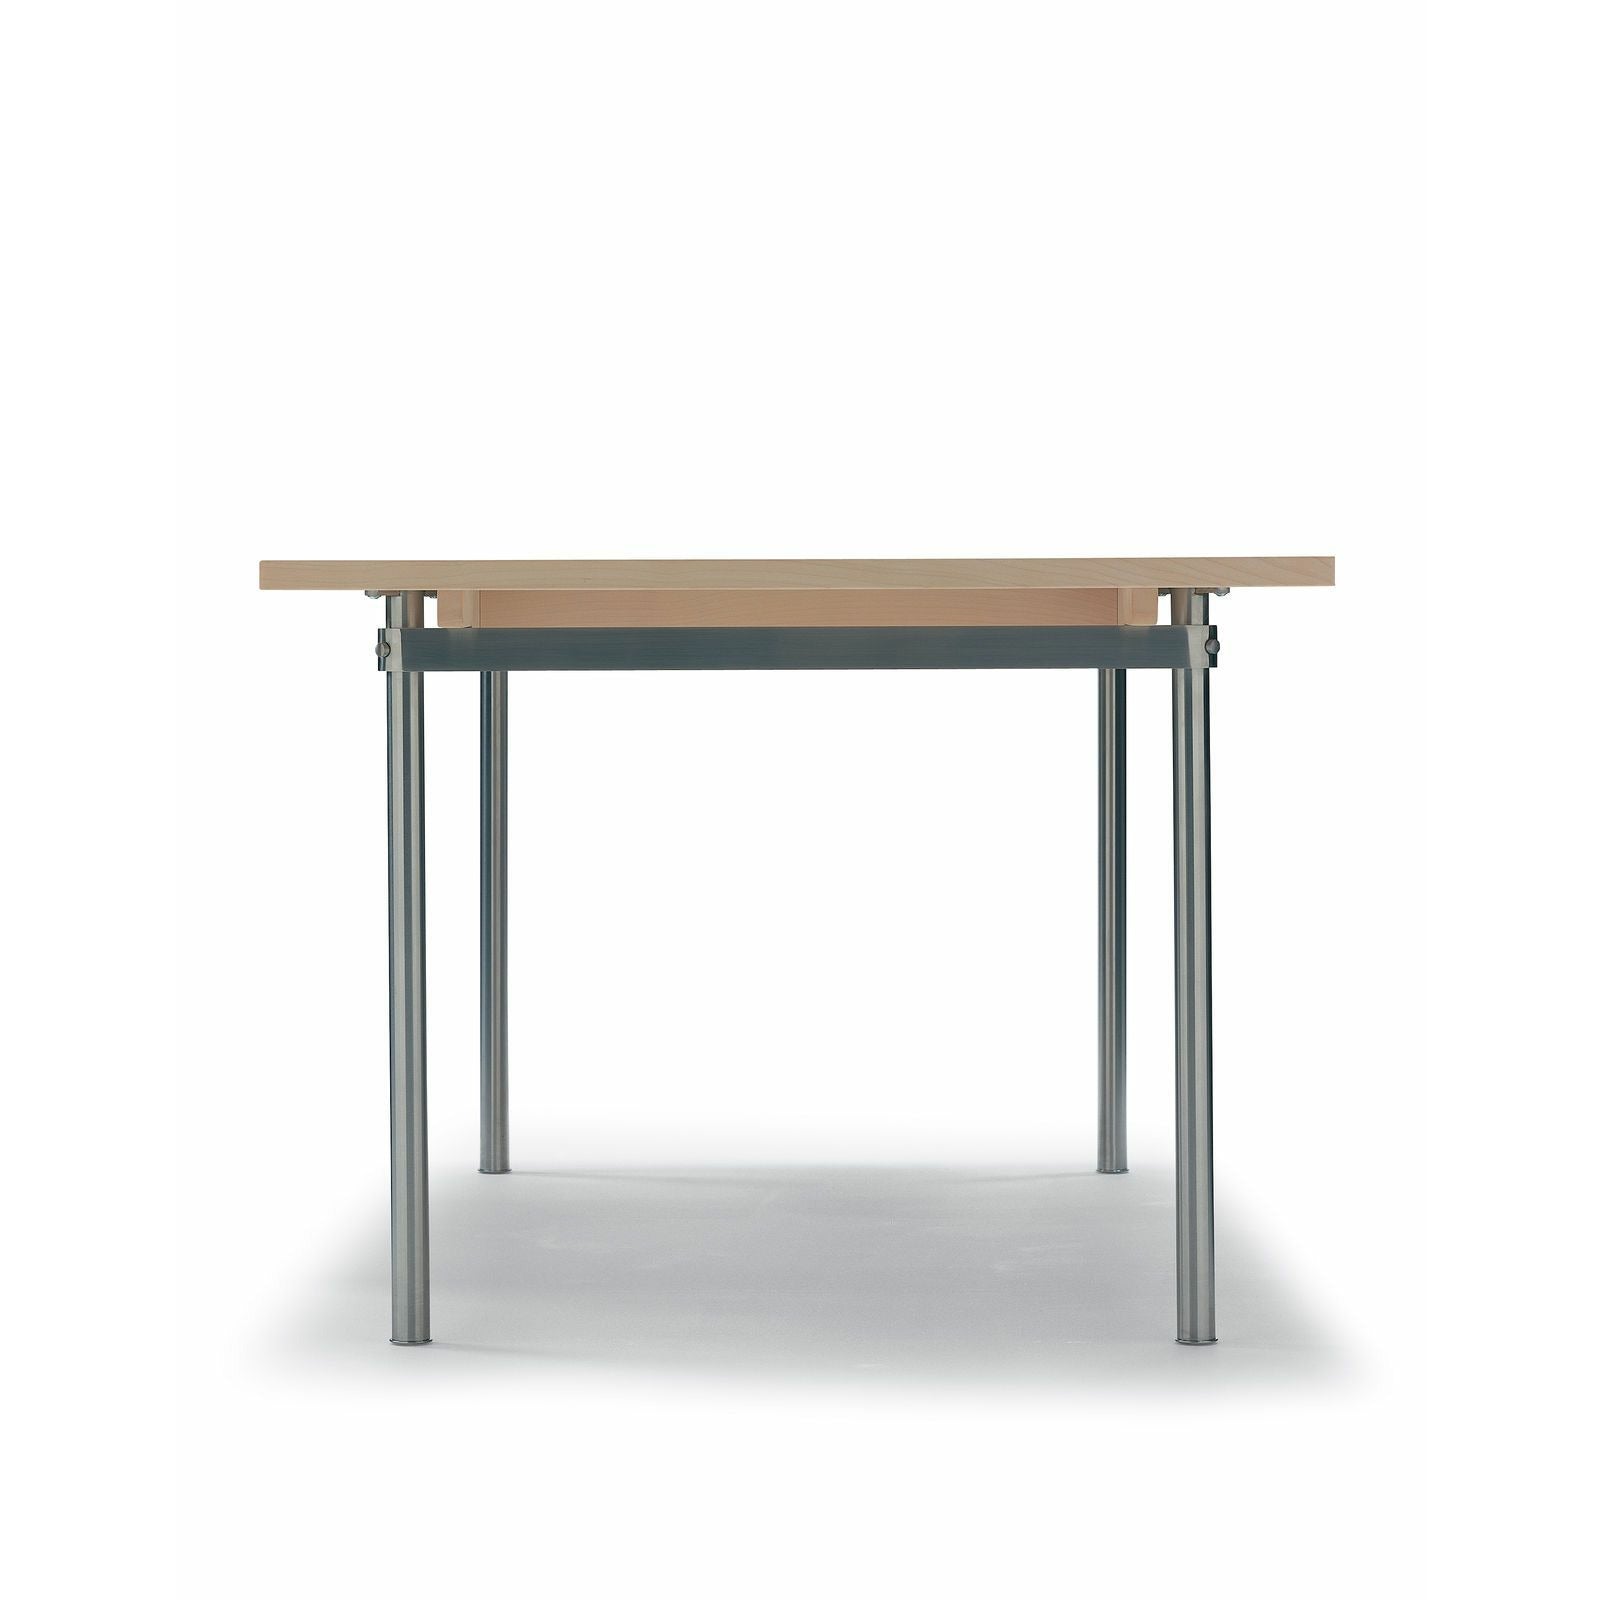 Carl Hansen CH322 matbord inkl. 4 ytterligare plattor, stål/oljad ek